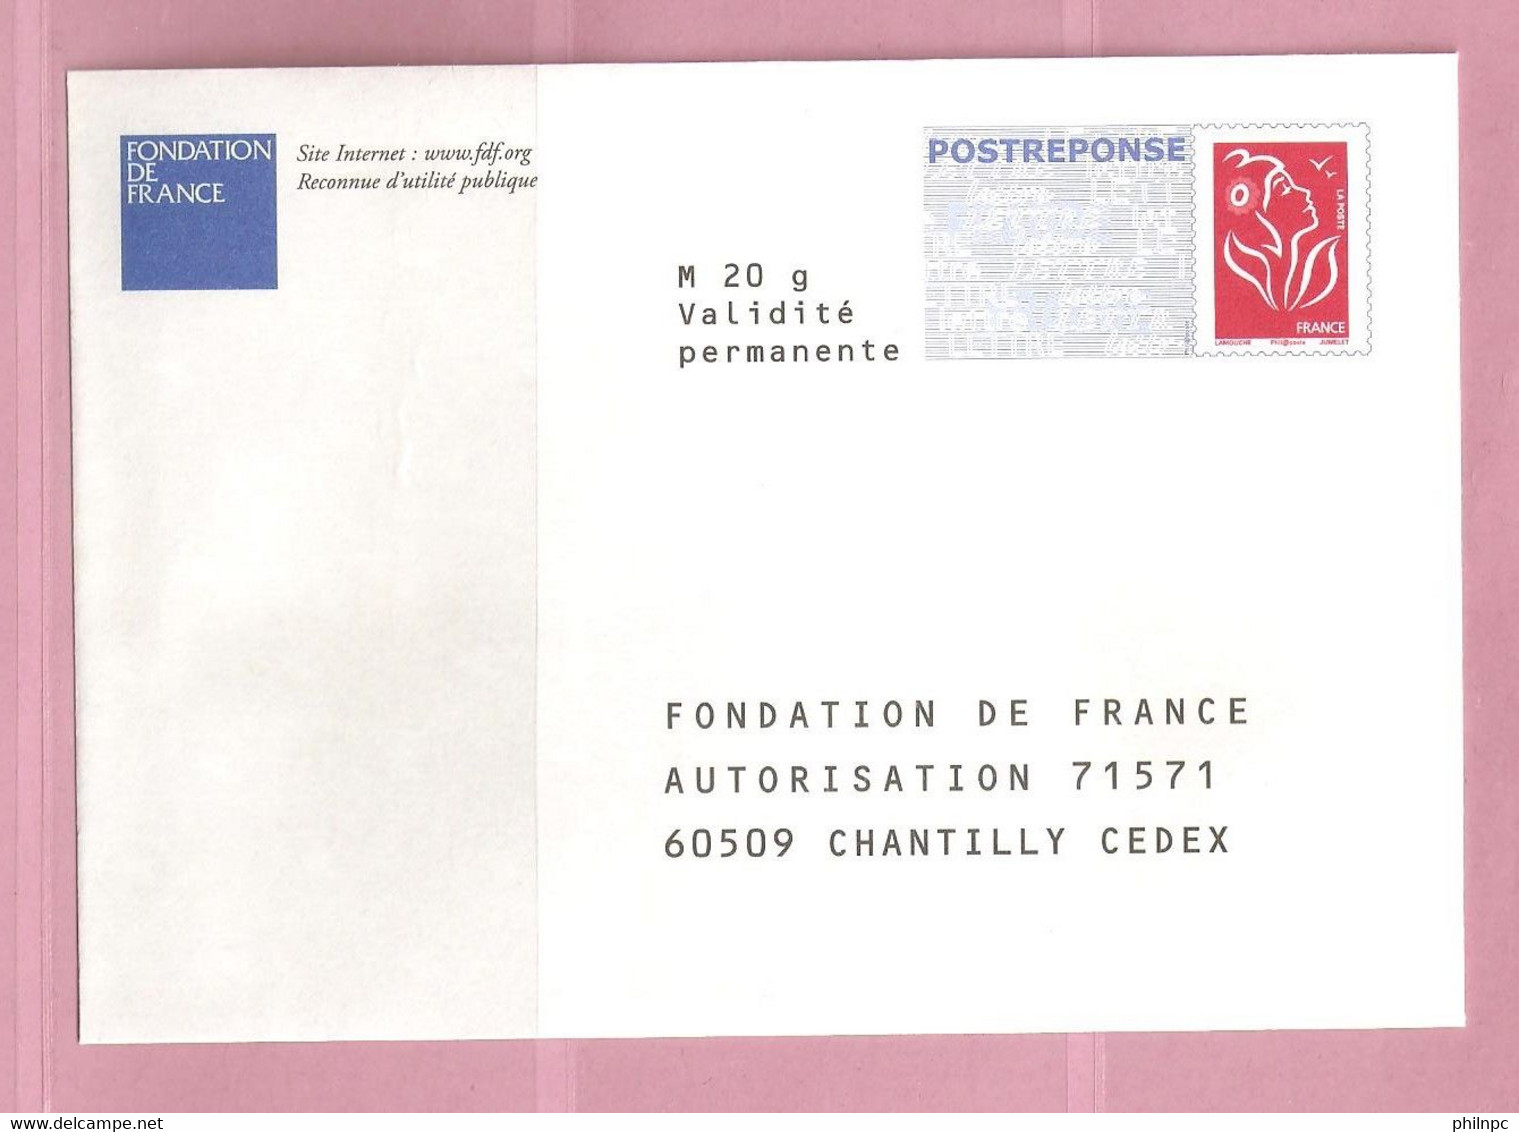 France, Prêt à Poster Réponse, 3734A, Postréponse, Fondation De France, Marianne De Lamouche - PAP : Antwoord /Lamouche